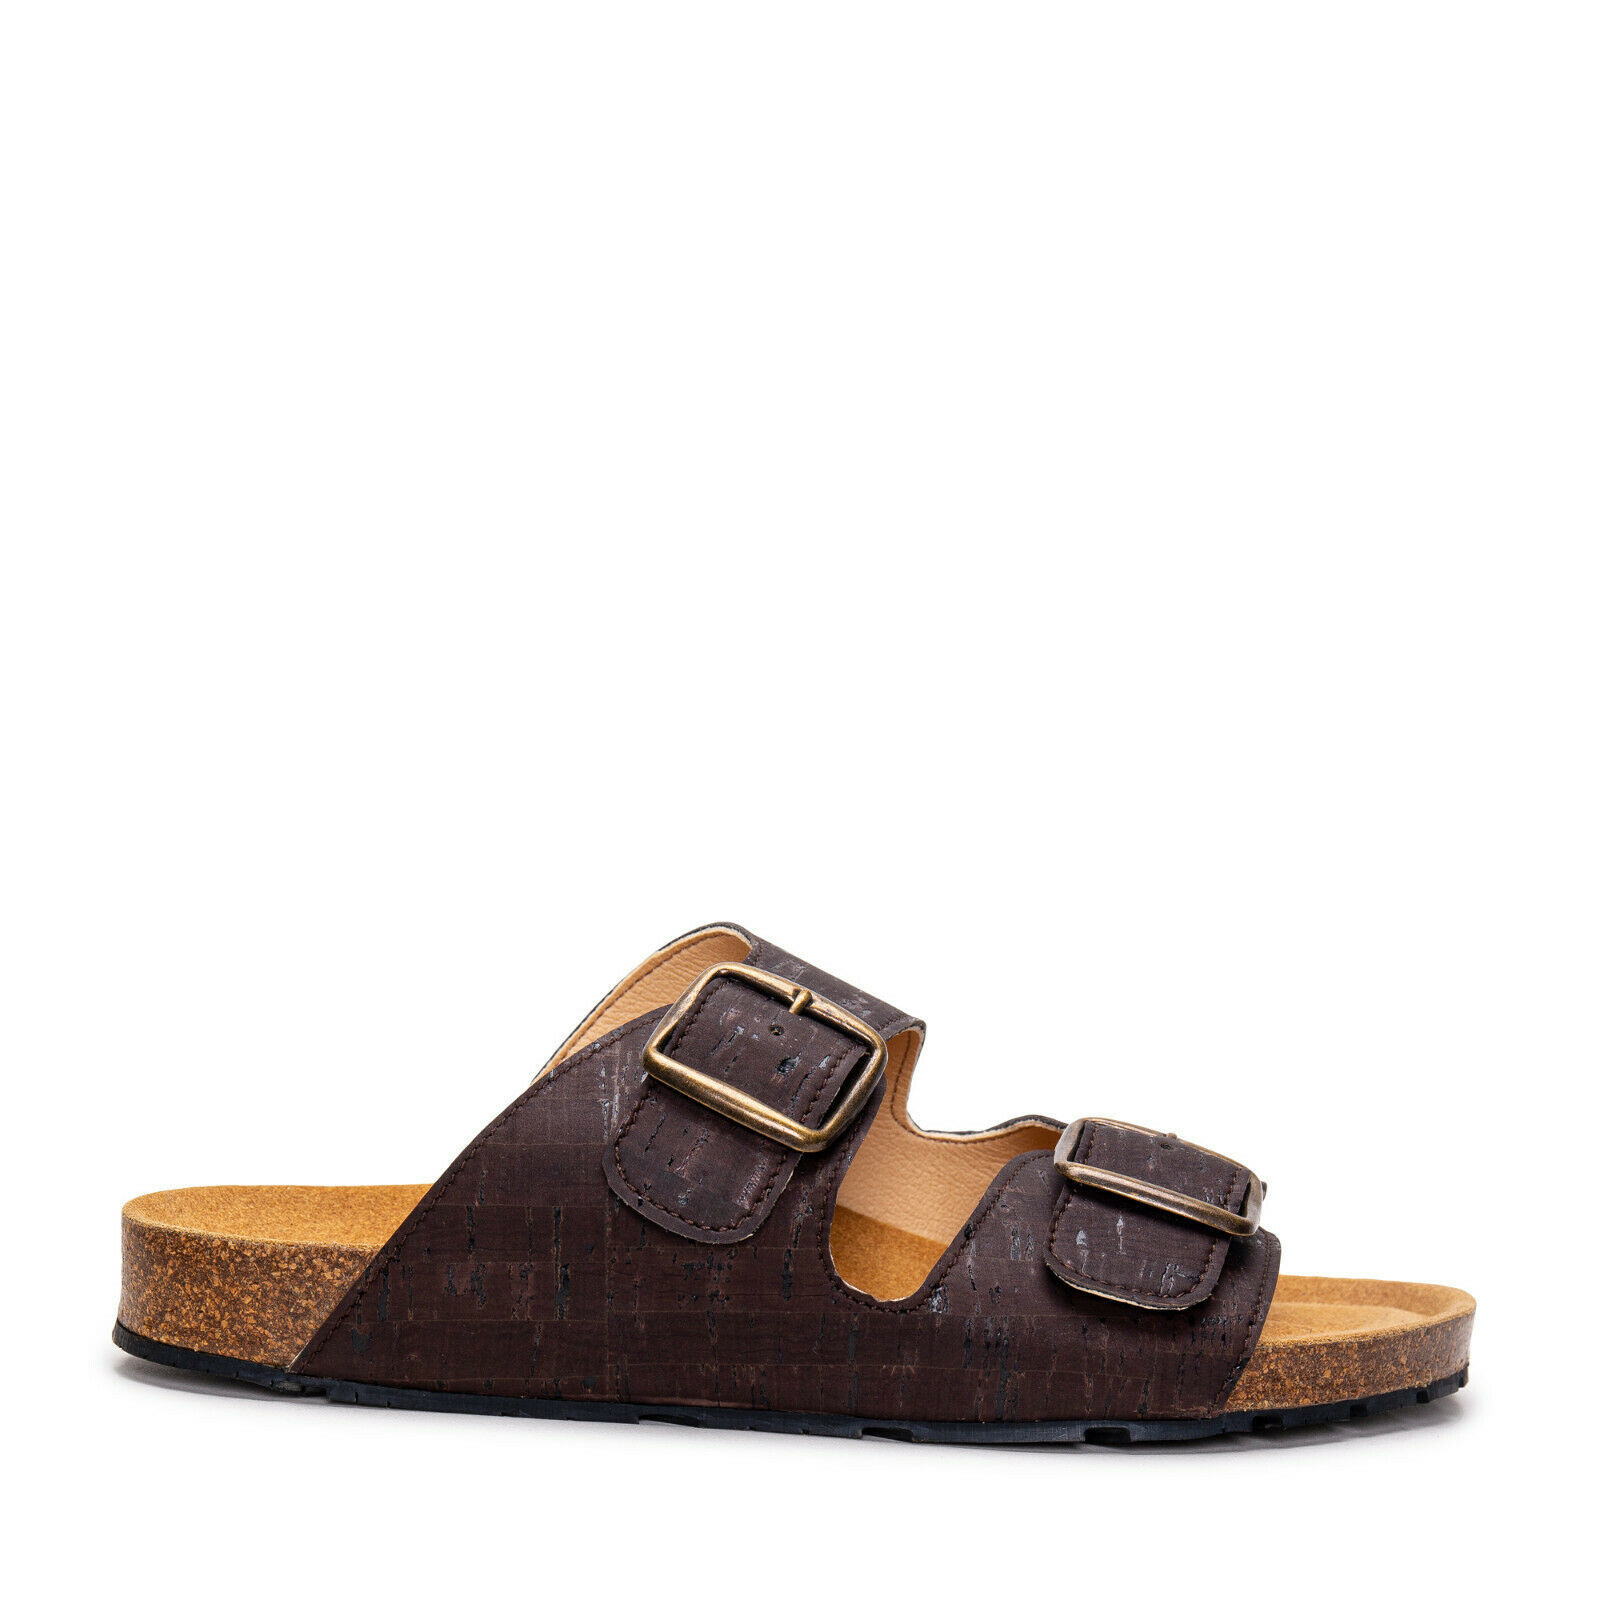 Vegan sandals flat backless open-toe adjustable buckle-straps in natural cork